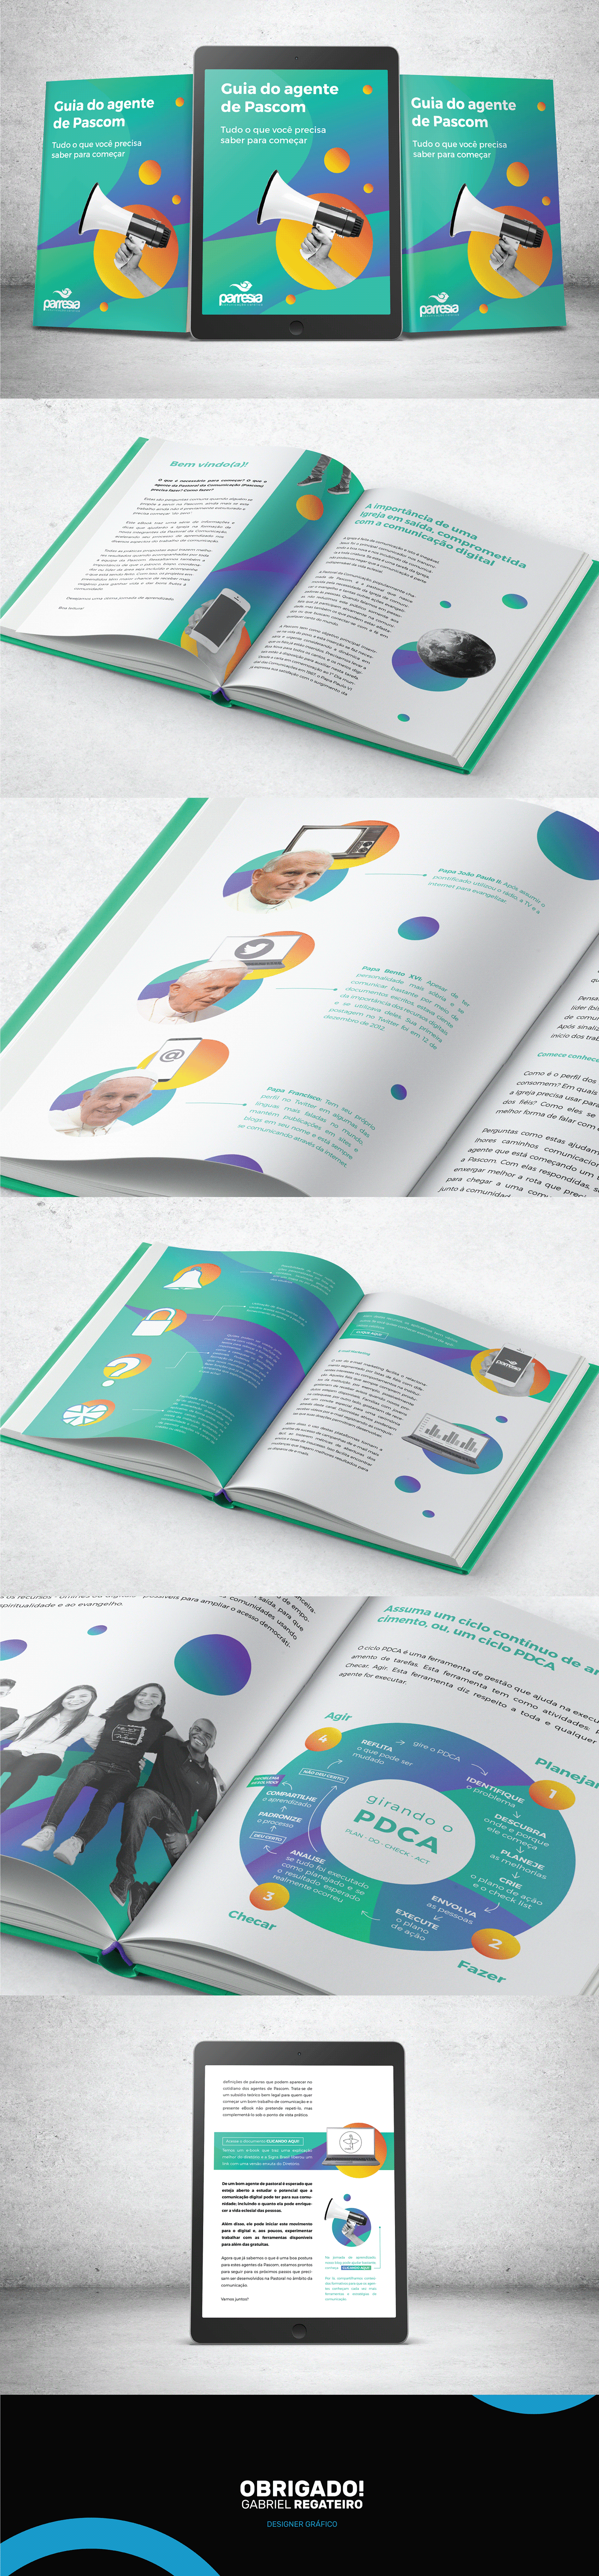 Católica comunicação design digital e-book ebook guia Livro marketing   pascom